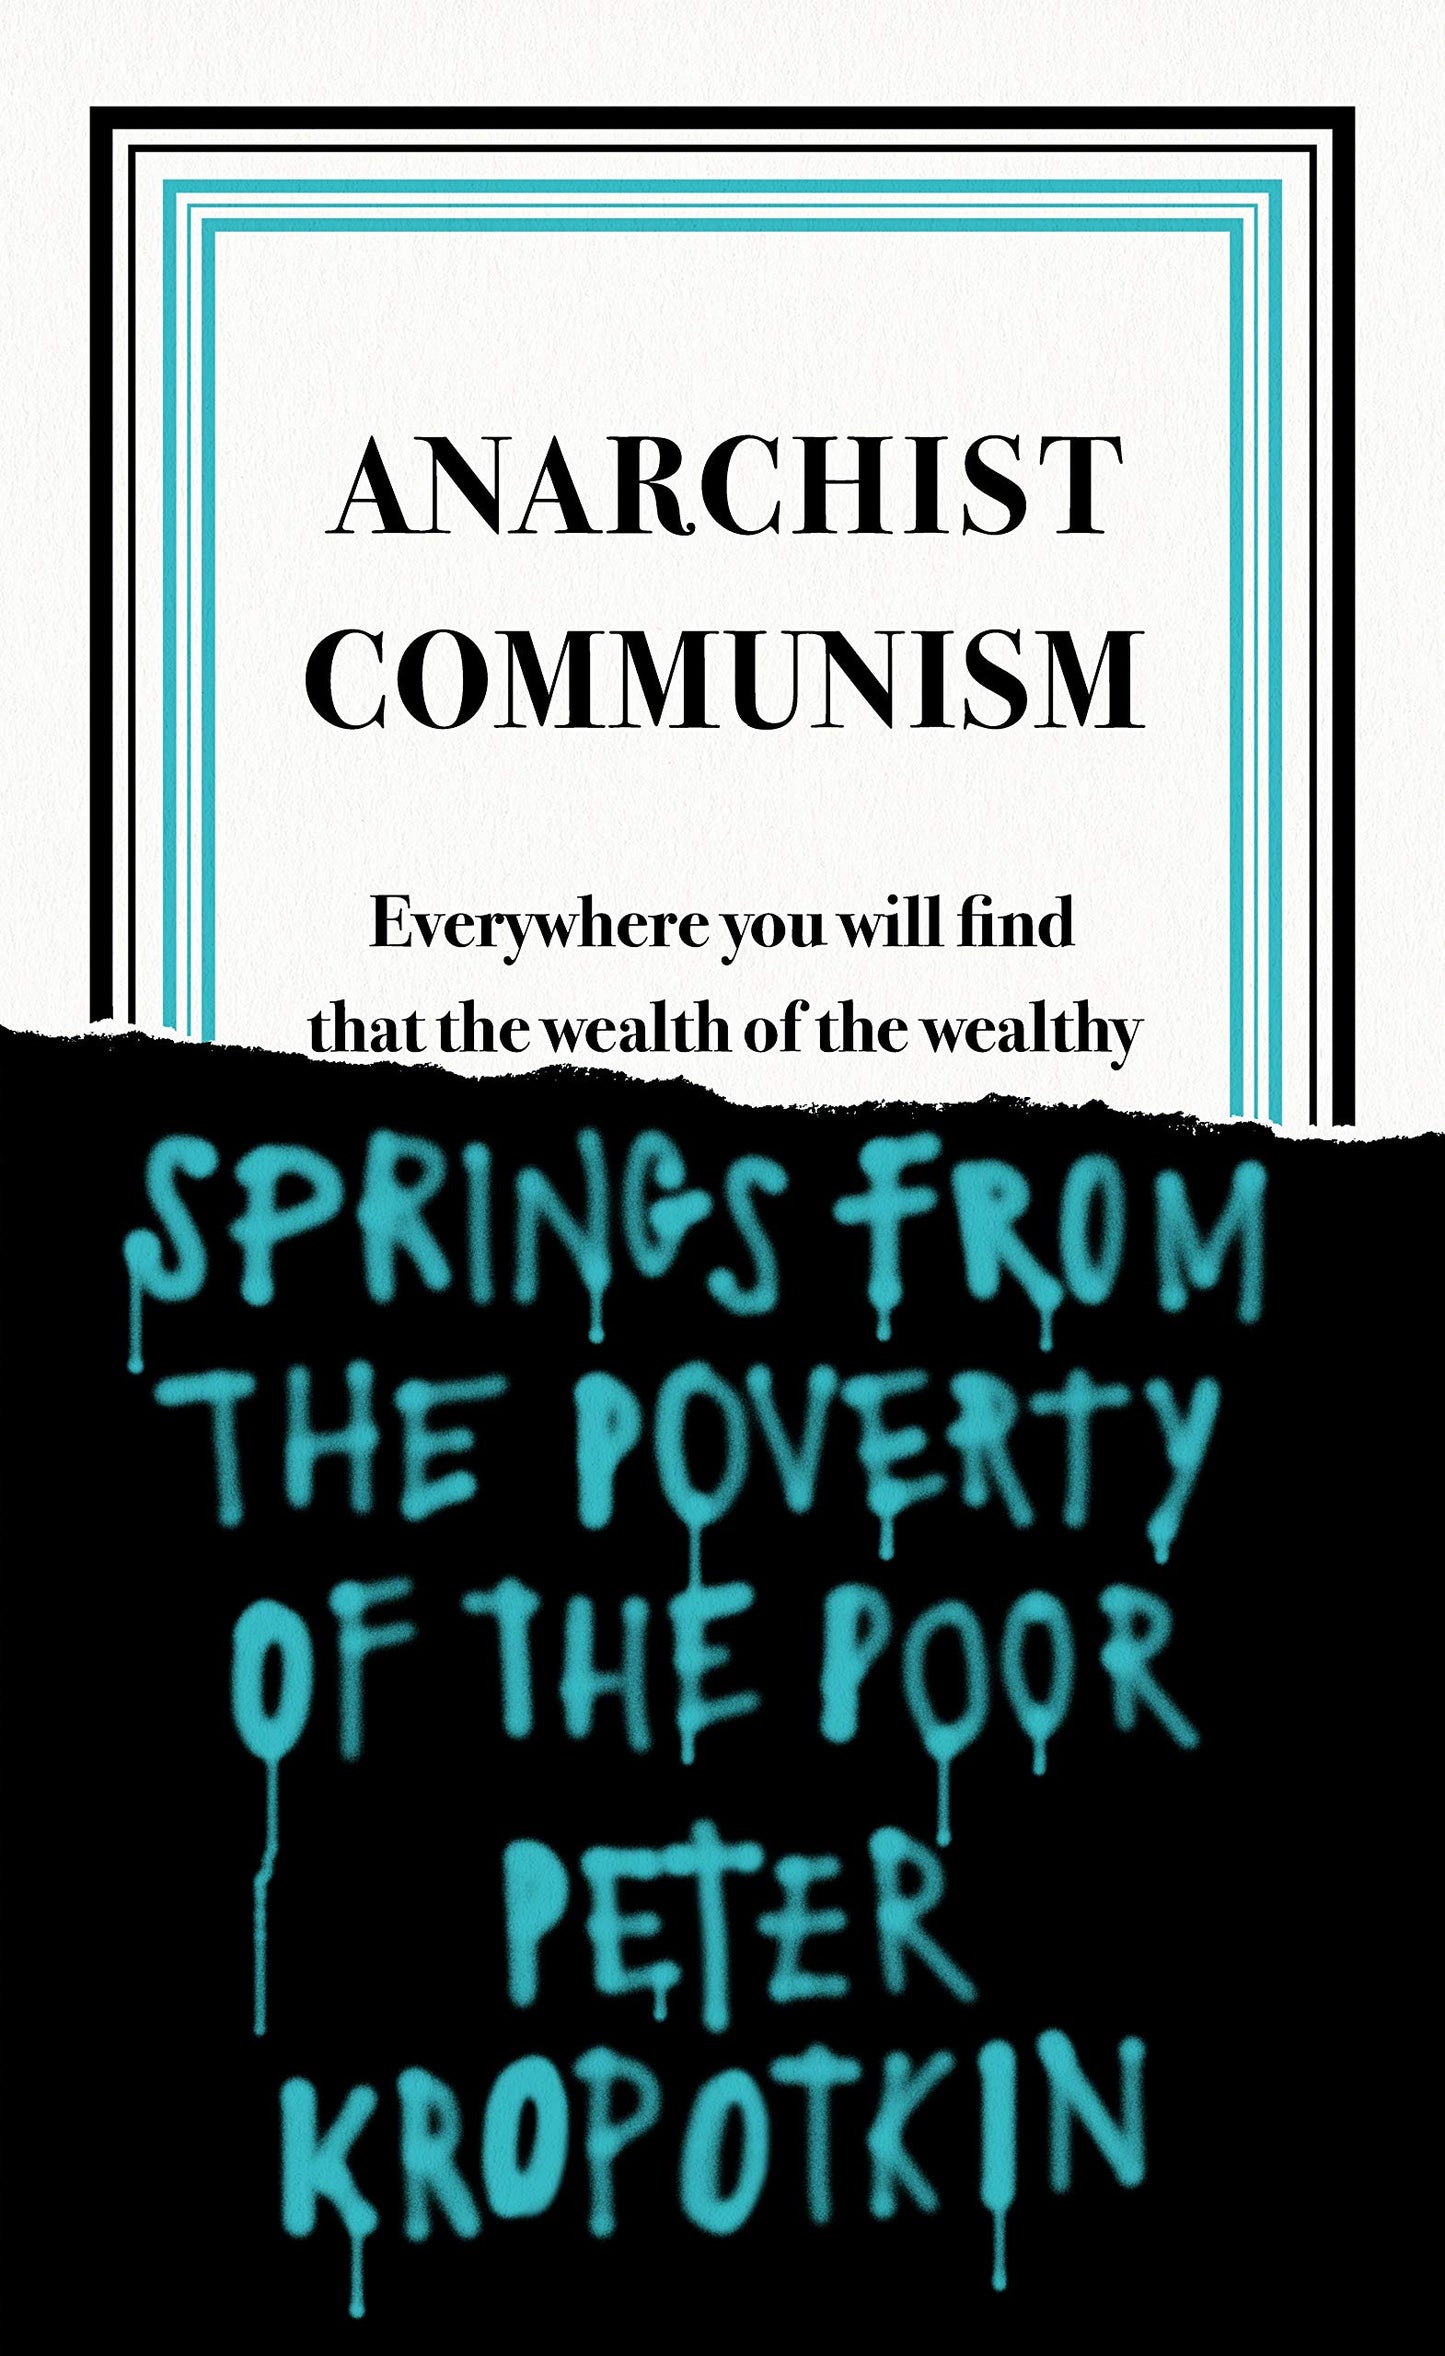 Anarchist Communism, by Peter Kropotkin